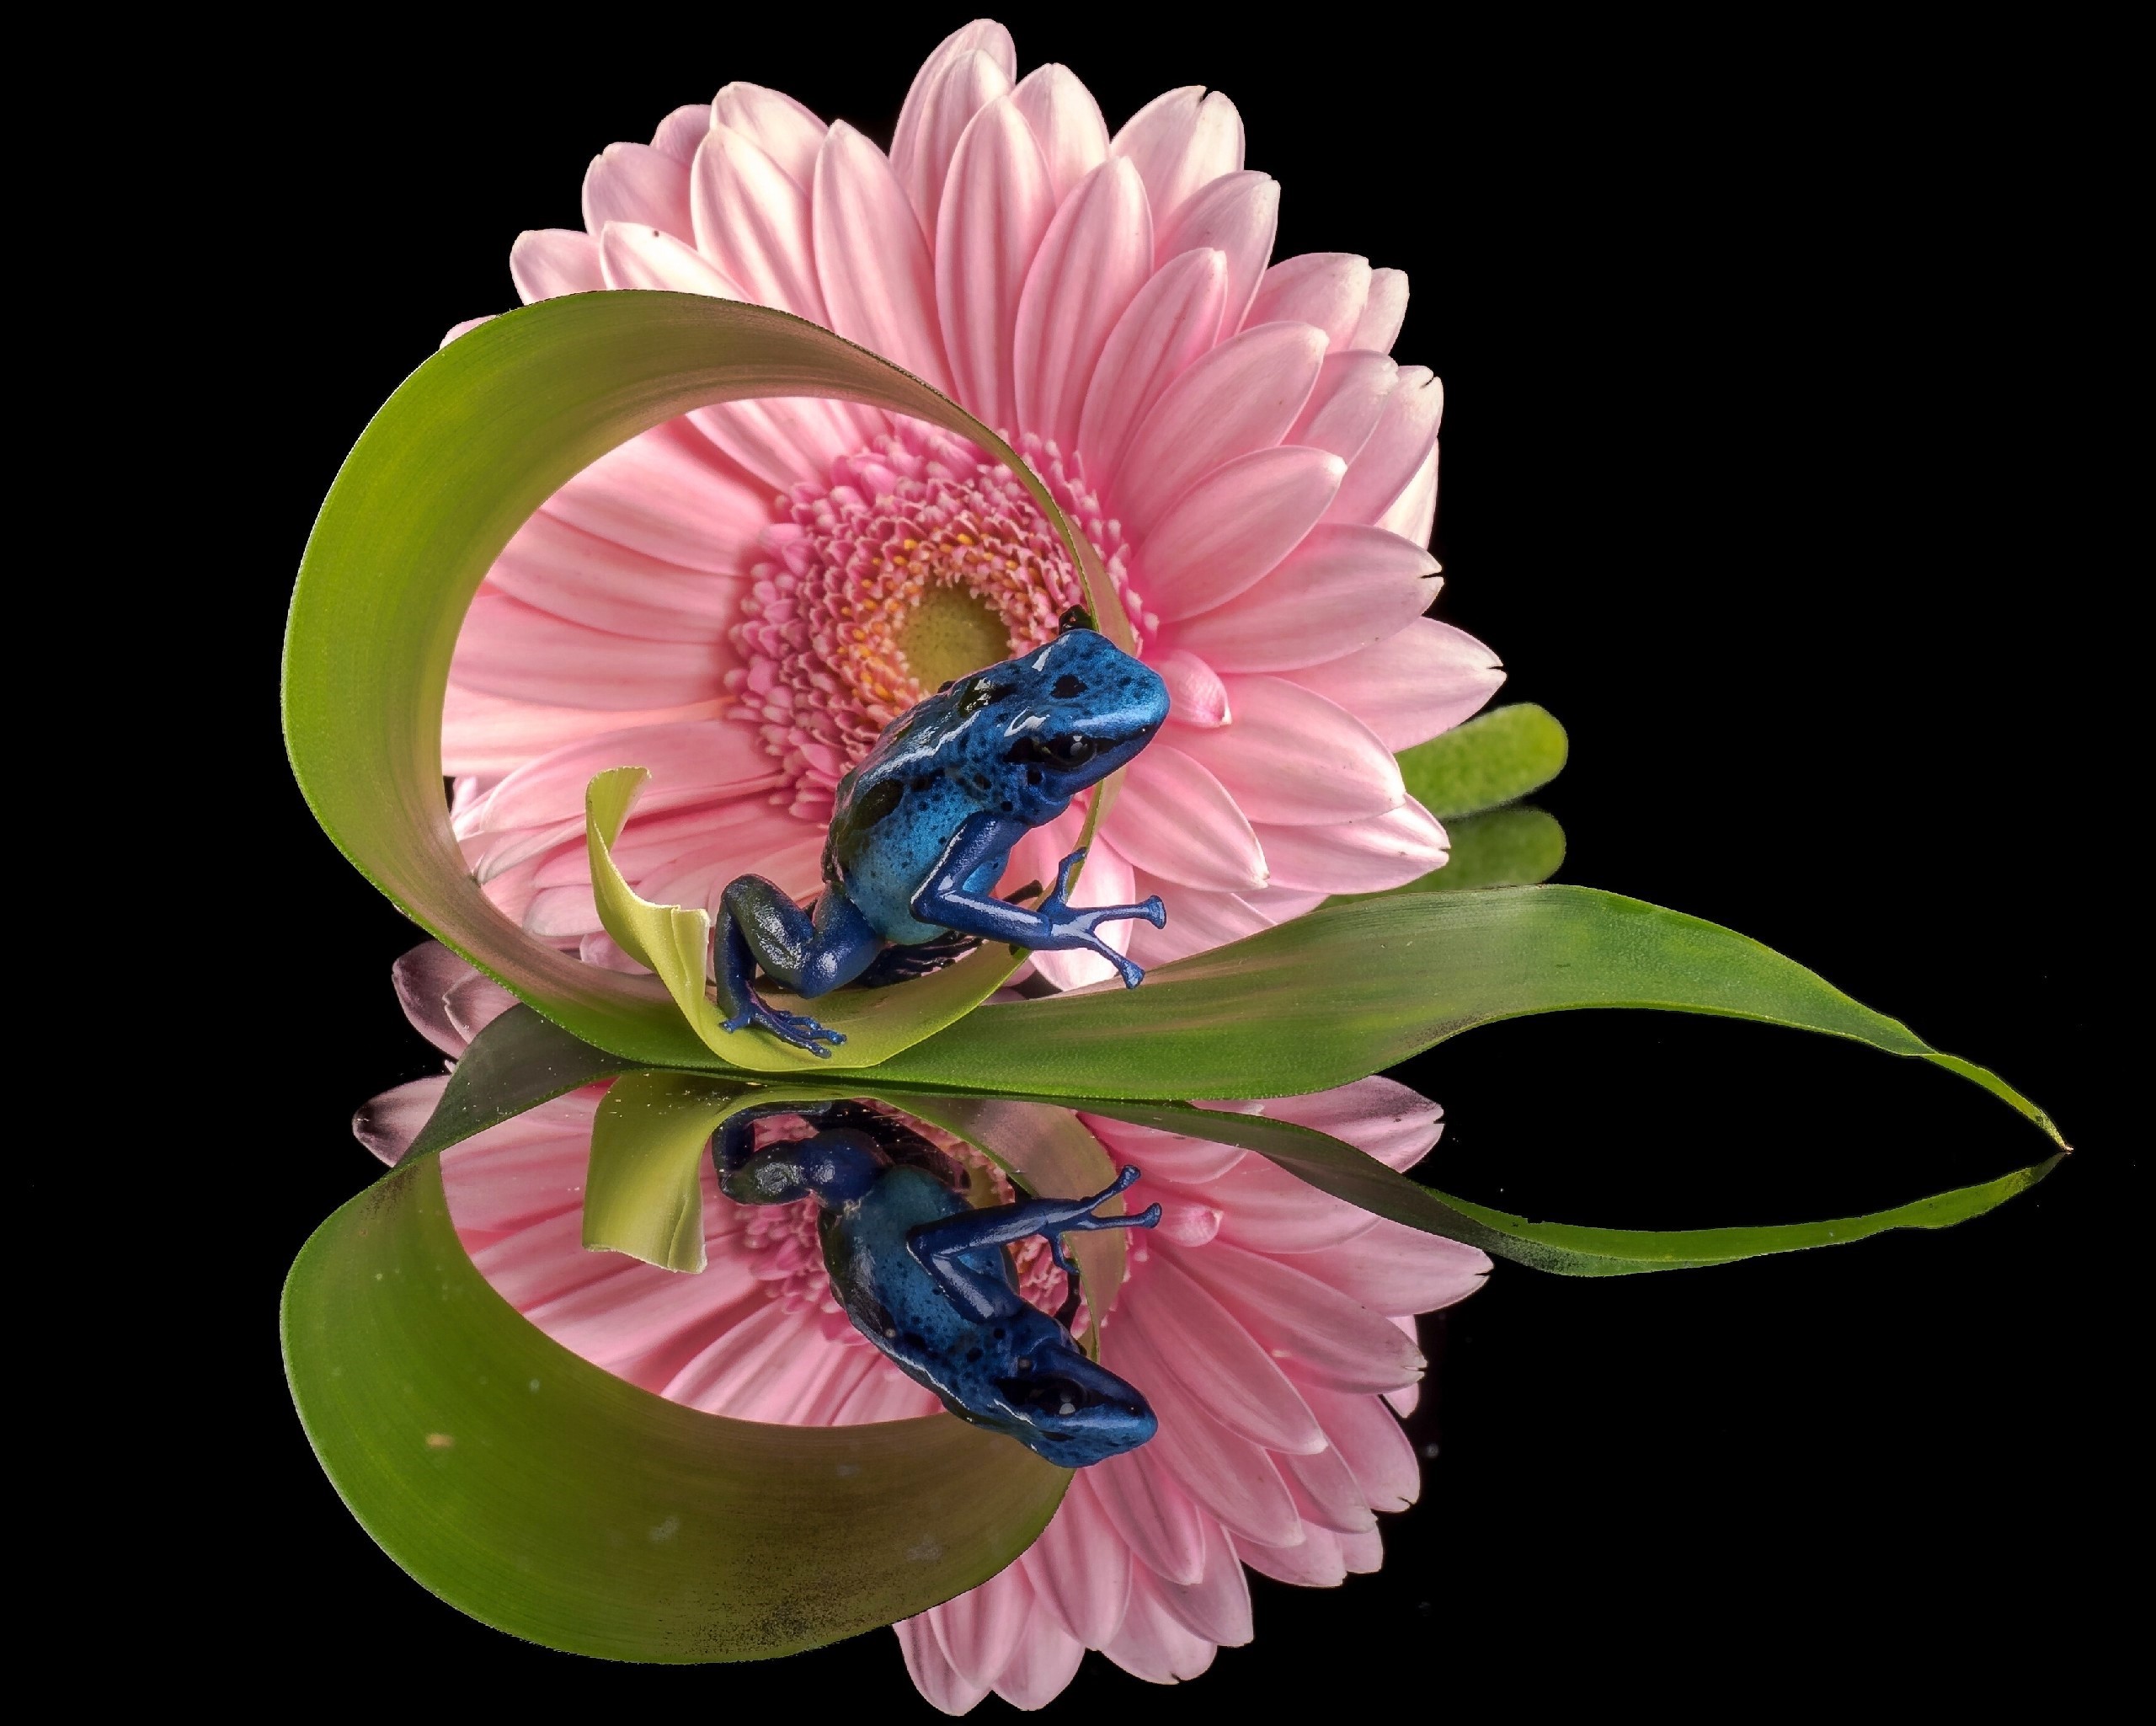 Free download wallpaper Frogs, Reflection, Flower, Leaf, Animal, Gerbera, Frog, Pink Flower on your PC desktop